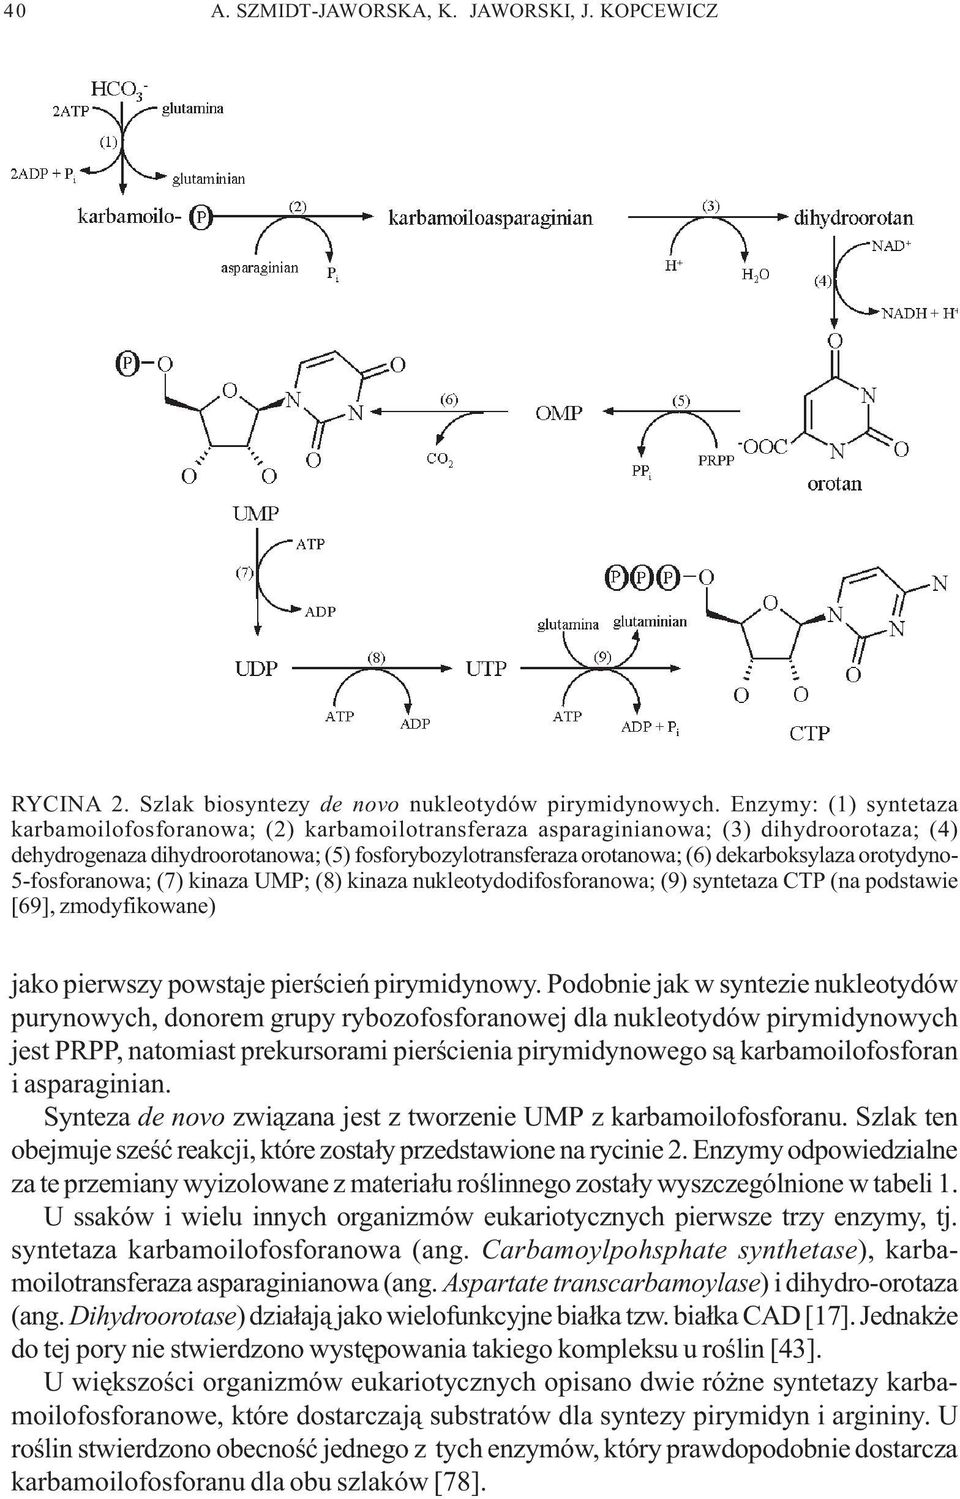 dekarboksylaza orotydyno- 5-fosforanowa; (7) kinaza UMP; (8) kinaza nukleotydodifosforanowa; (9) syntetaza CTP (na podstawie [69], zmodyfikowane) jako pierwszy powstaje pierœcieñ pirymidynowy.